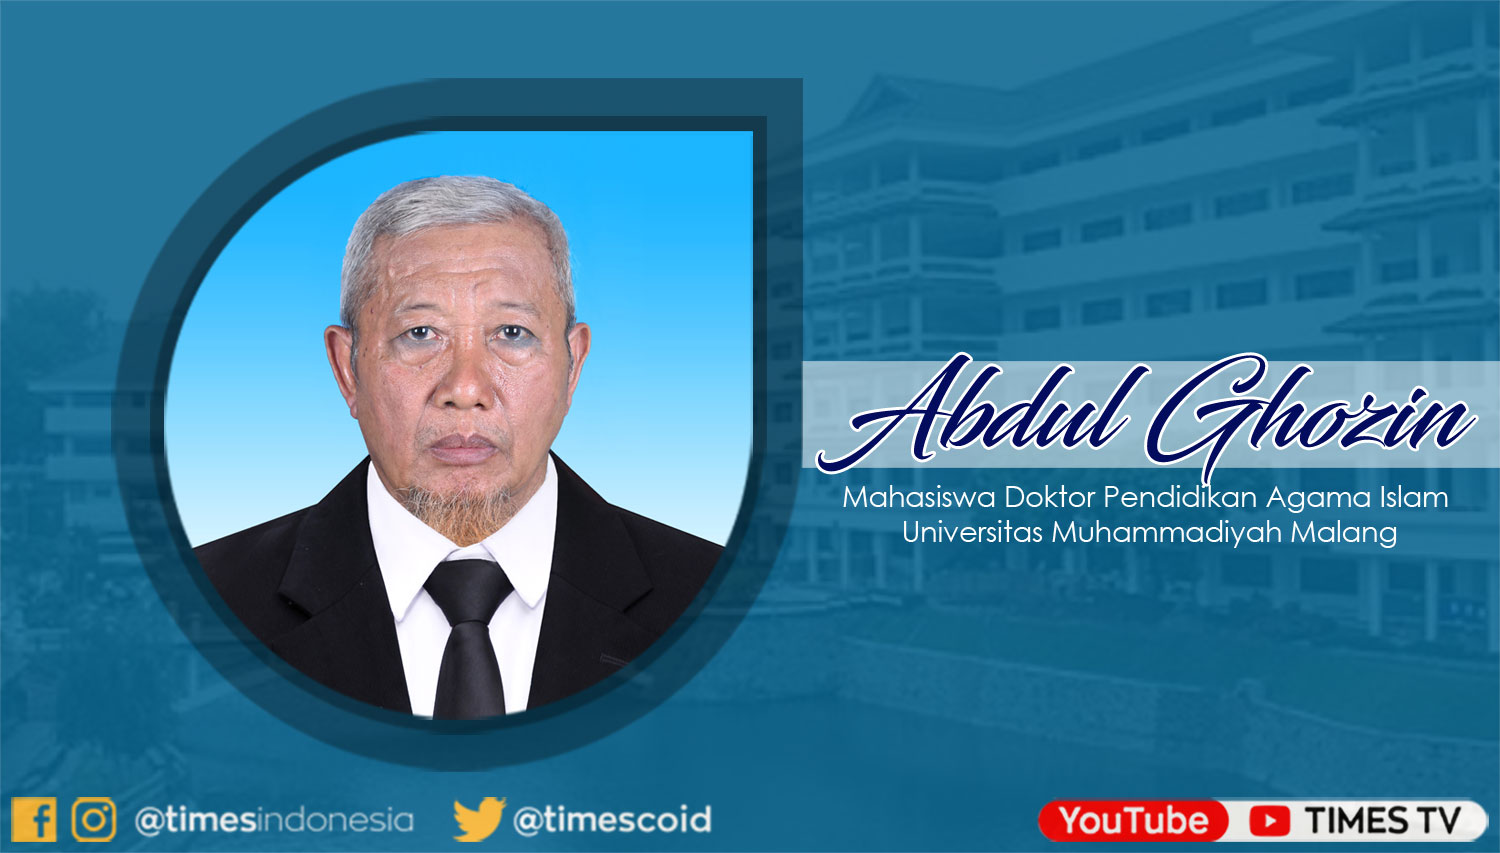 Abdul Ghozin, Mahasiswa progam Doktor Pendidikan Agama Islam Universitas Muhammadiyah Malang.